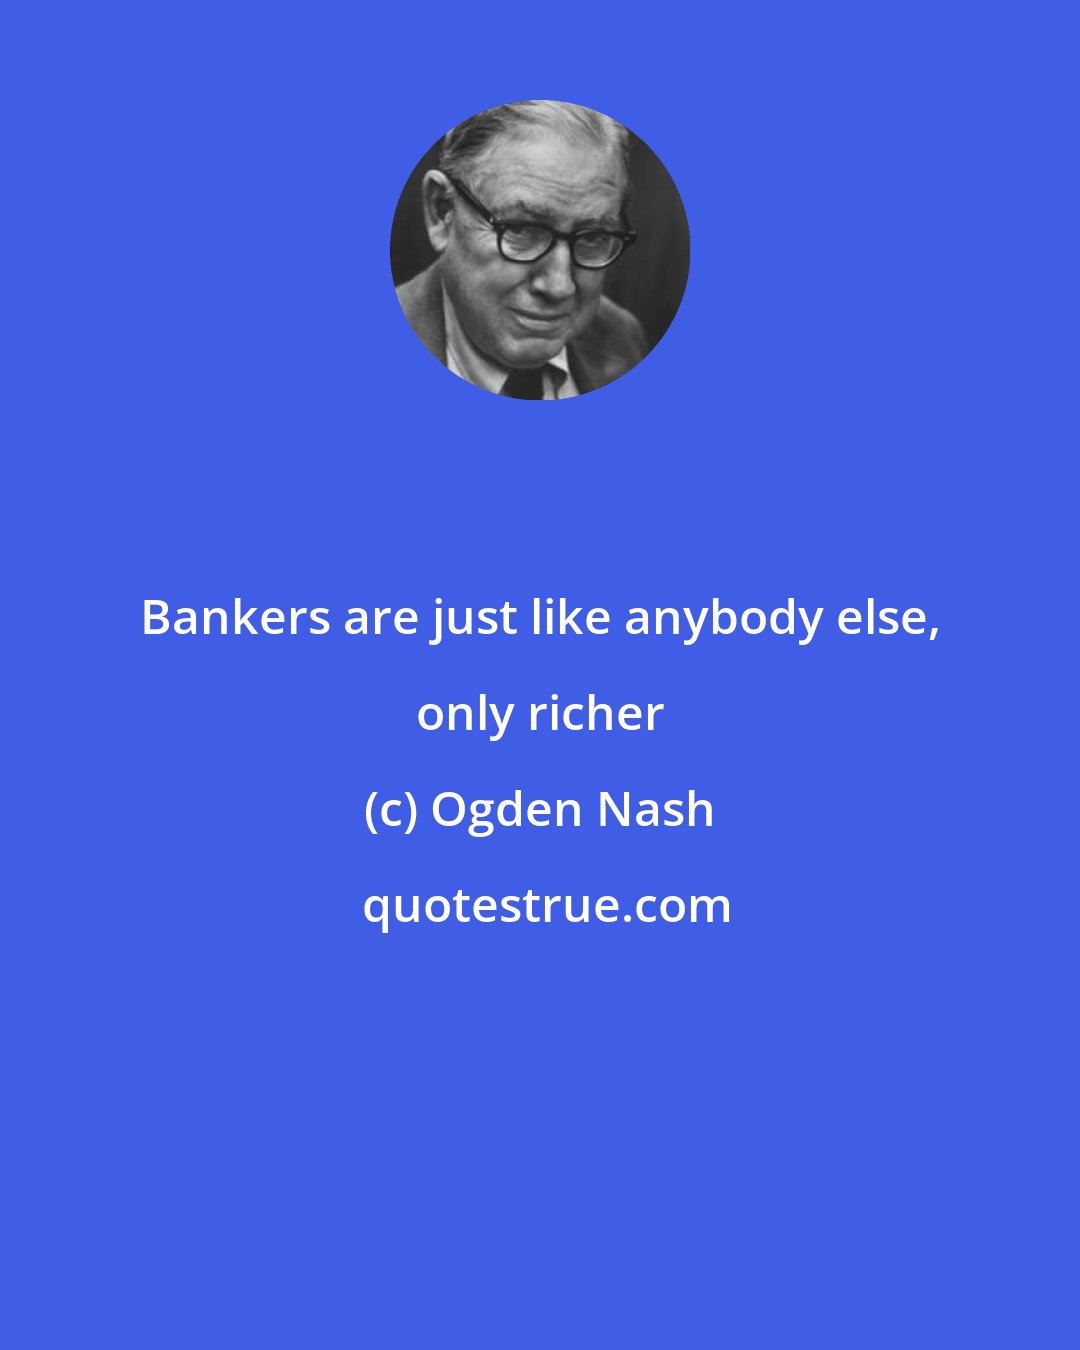 Ogden Nash: Bankers are just like anybody else, only richer